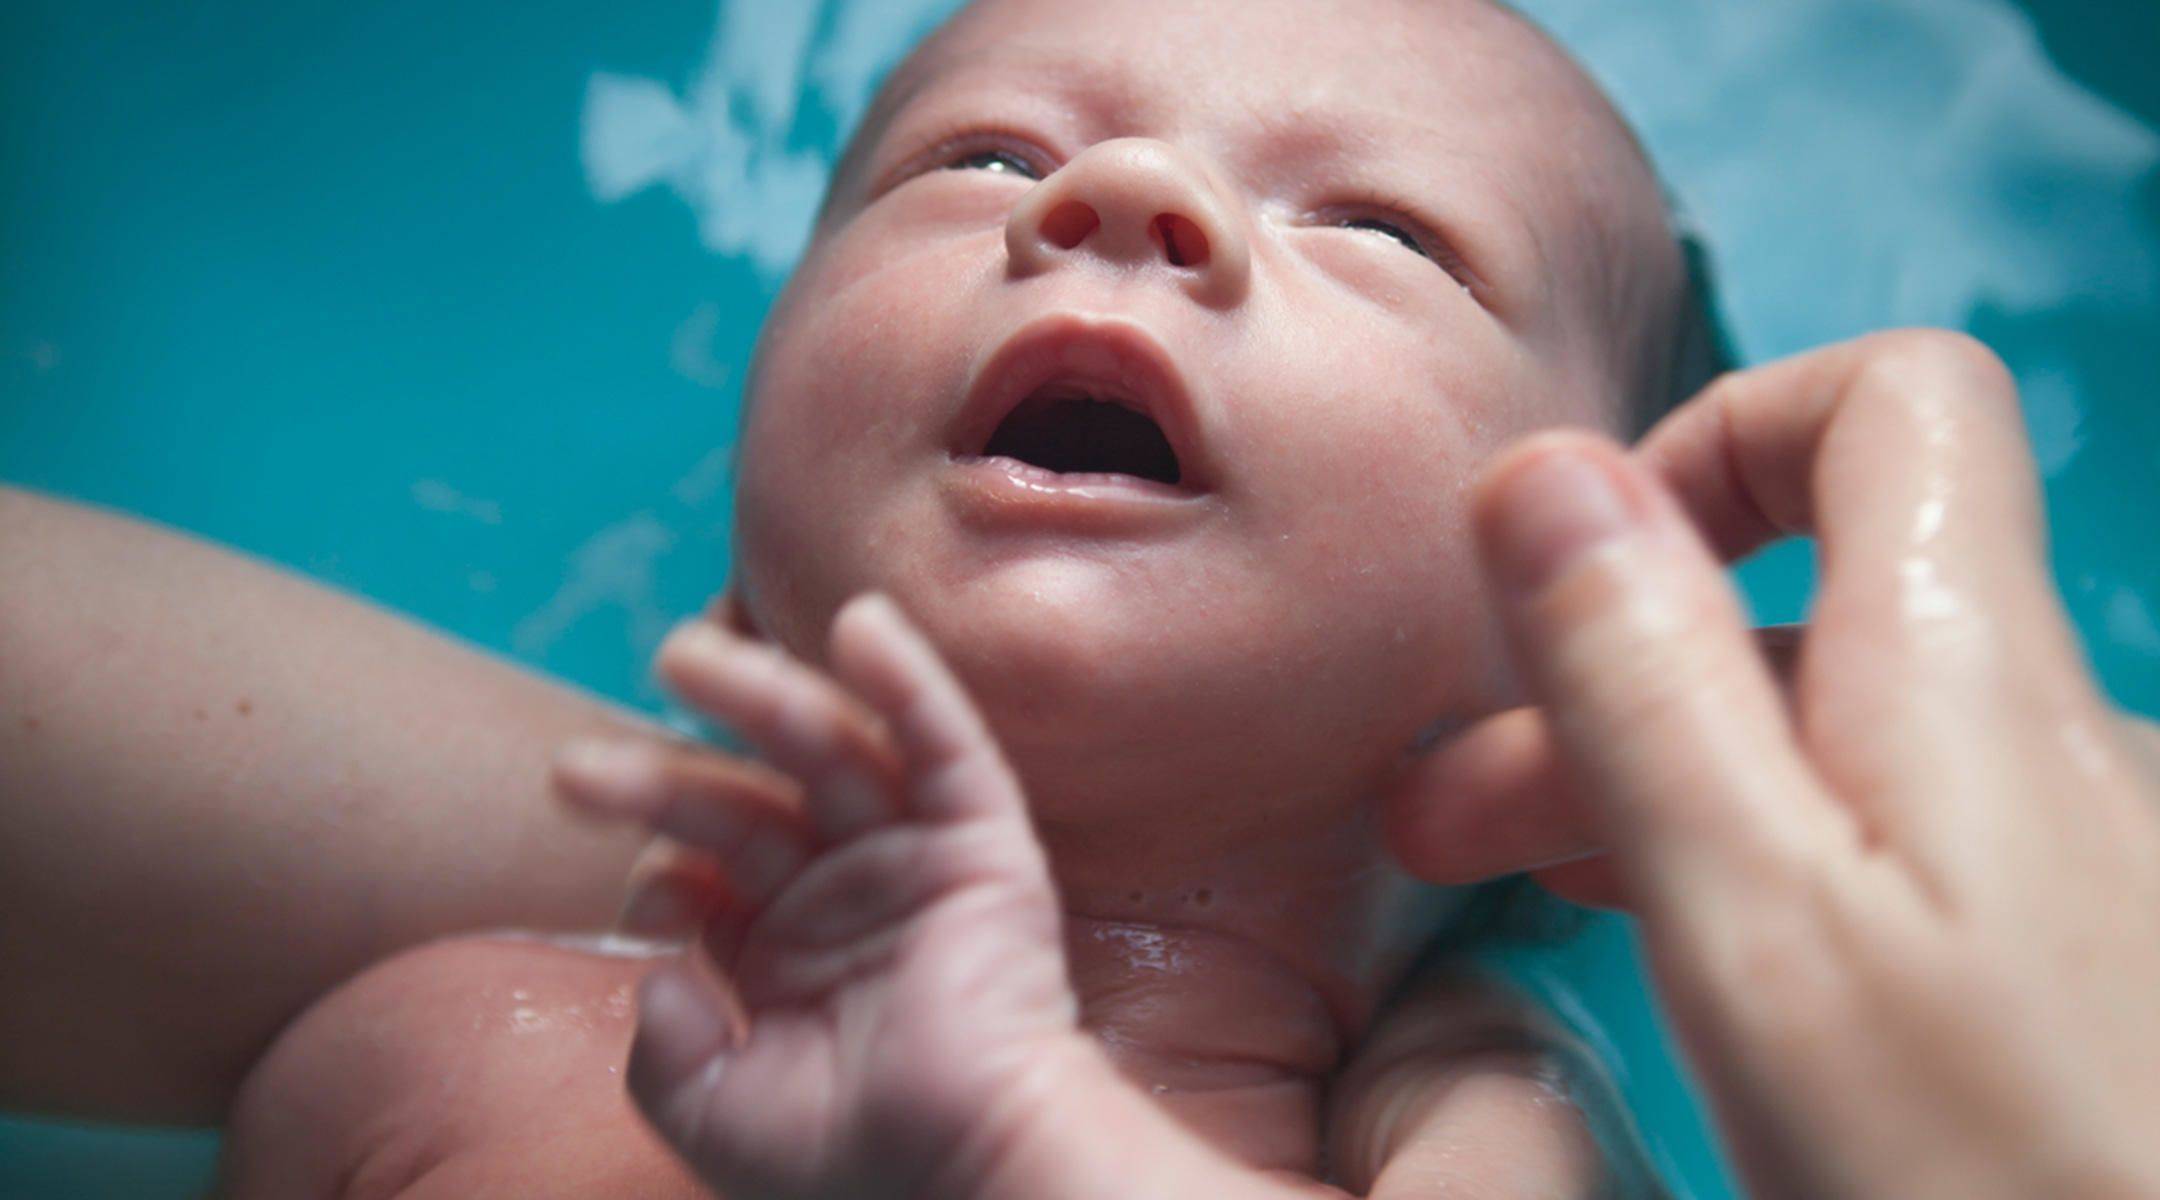 Как развивается зрение новорожденных: Удивительный мир глазами младенца